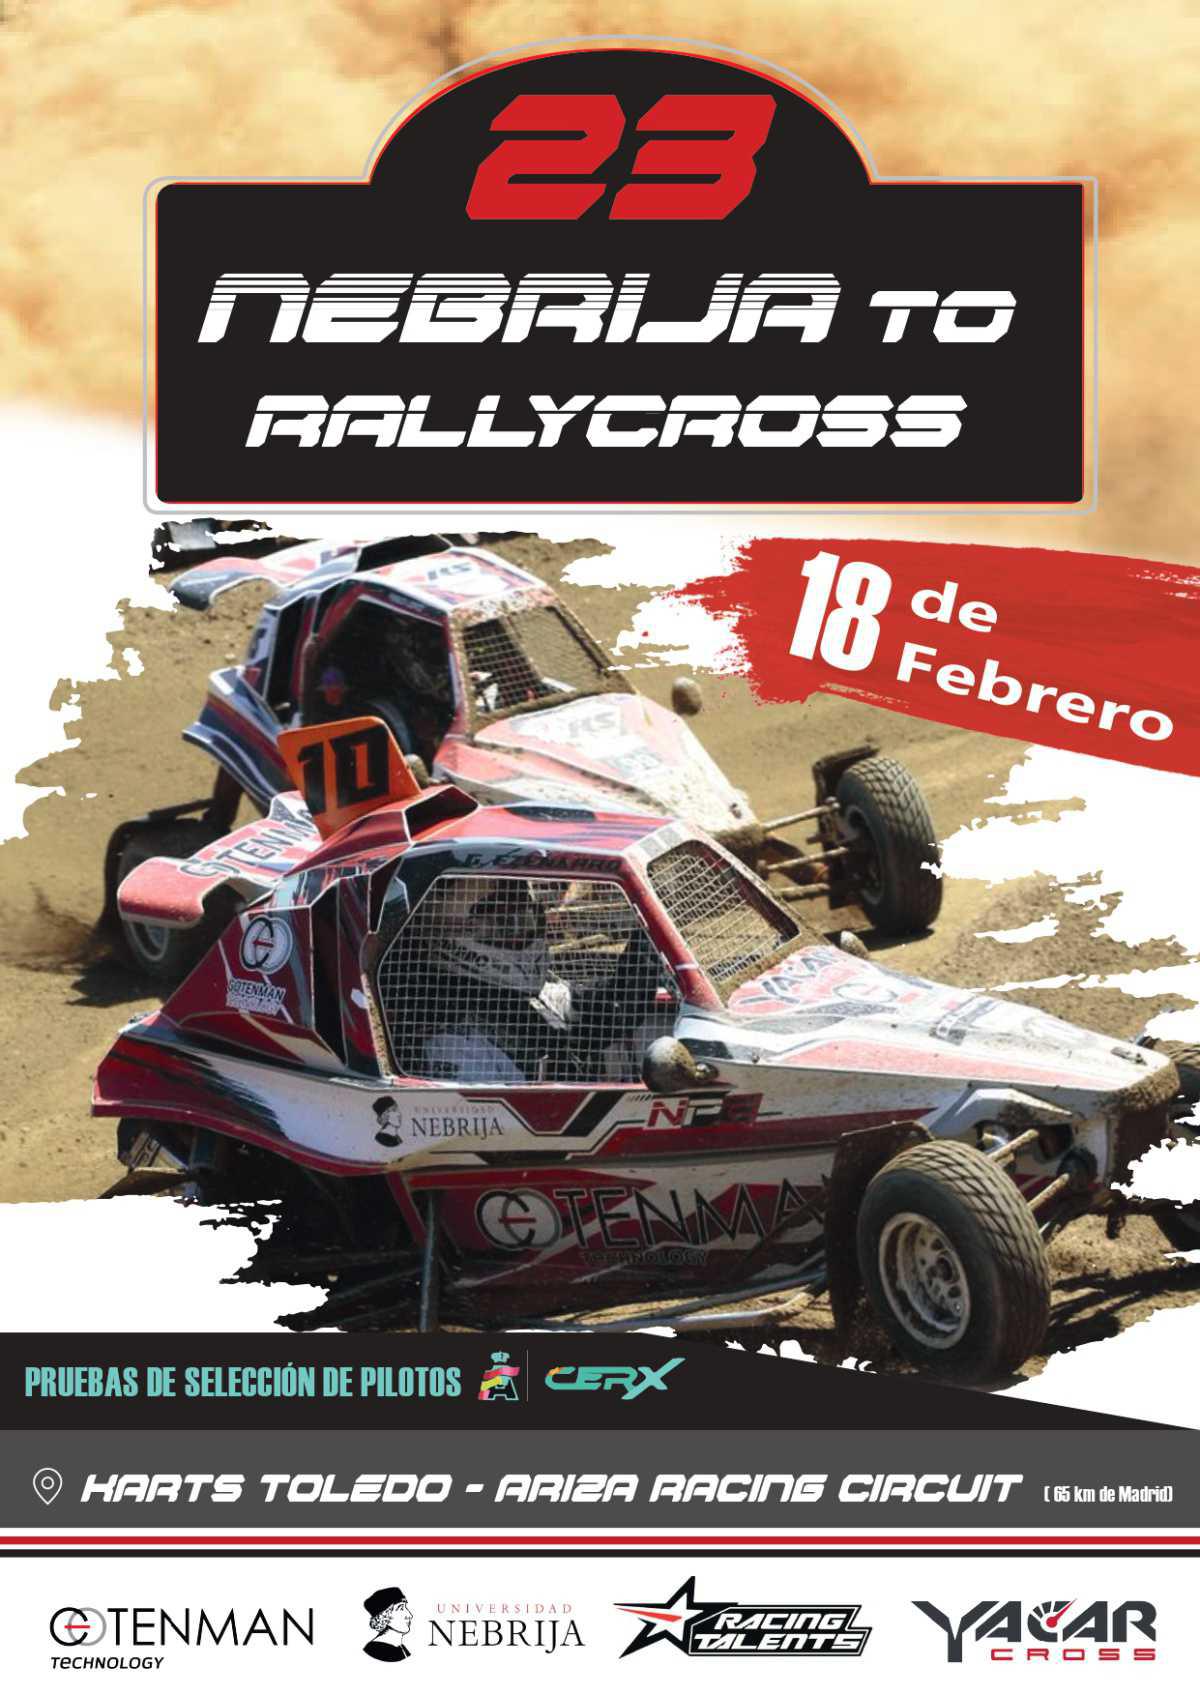 La Universidad Nebrija organiza una Selección de Pilotos para la CERX el 18 de febrero